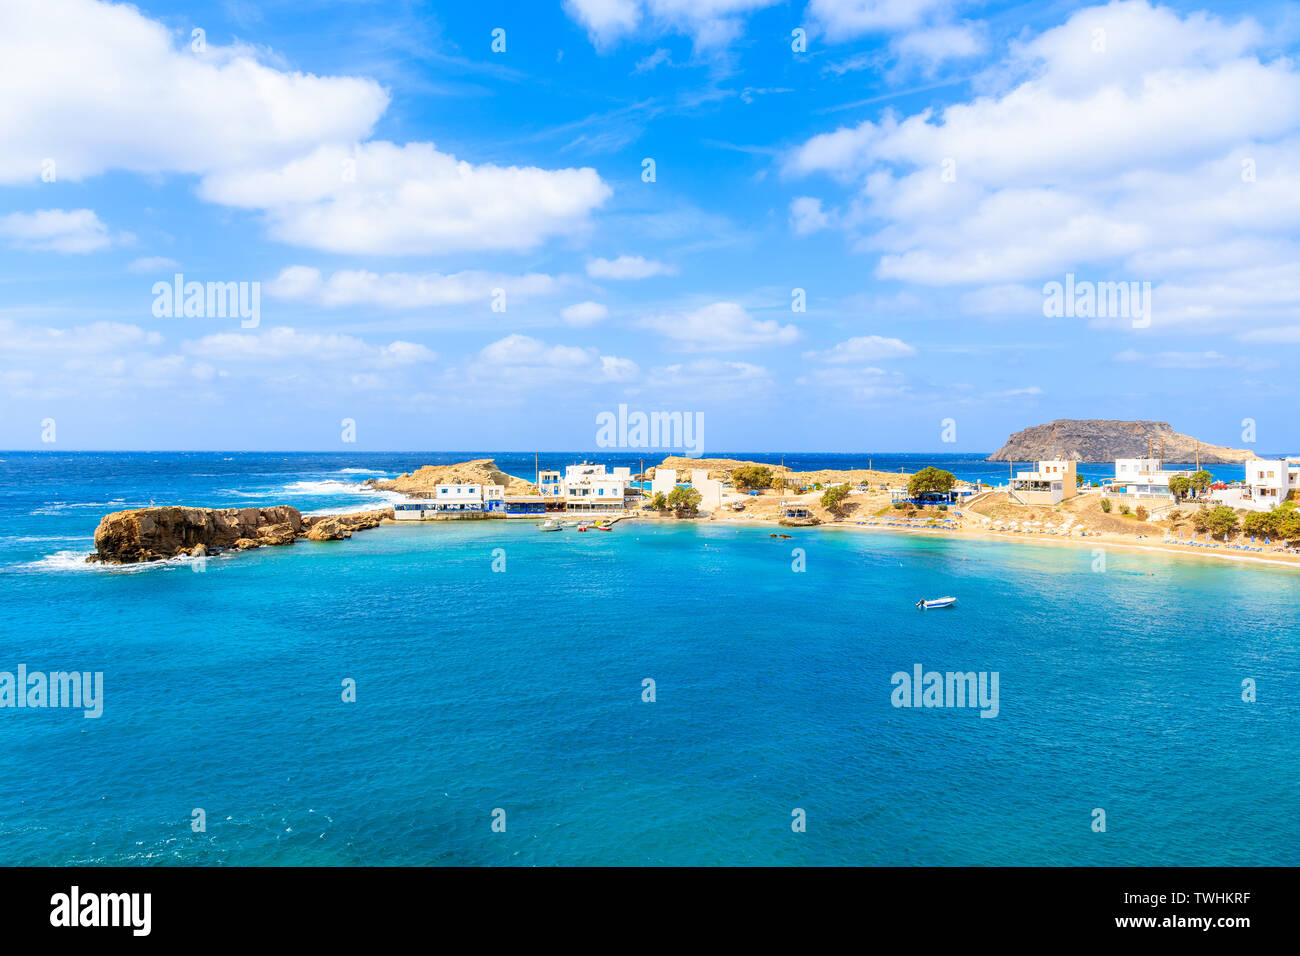 Vue de la plage de Lefkos et port de pêche, l'île de Karpathos, Grèce Banque D'Images